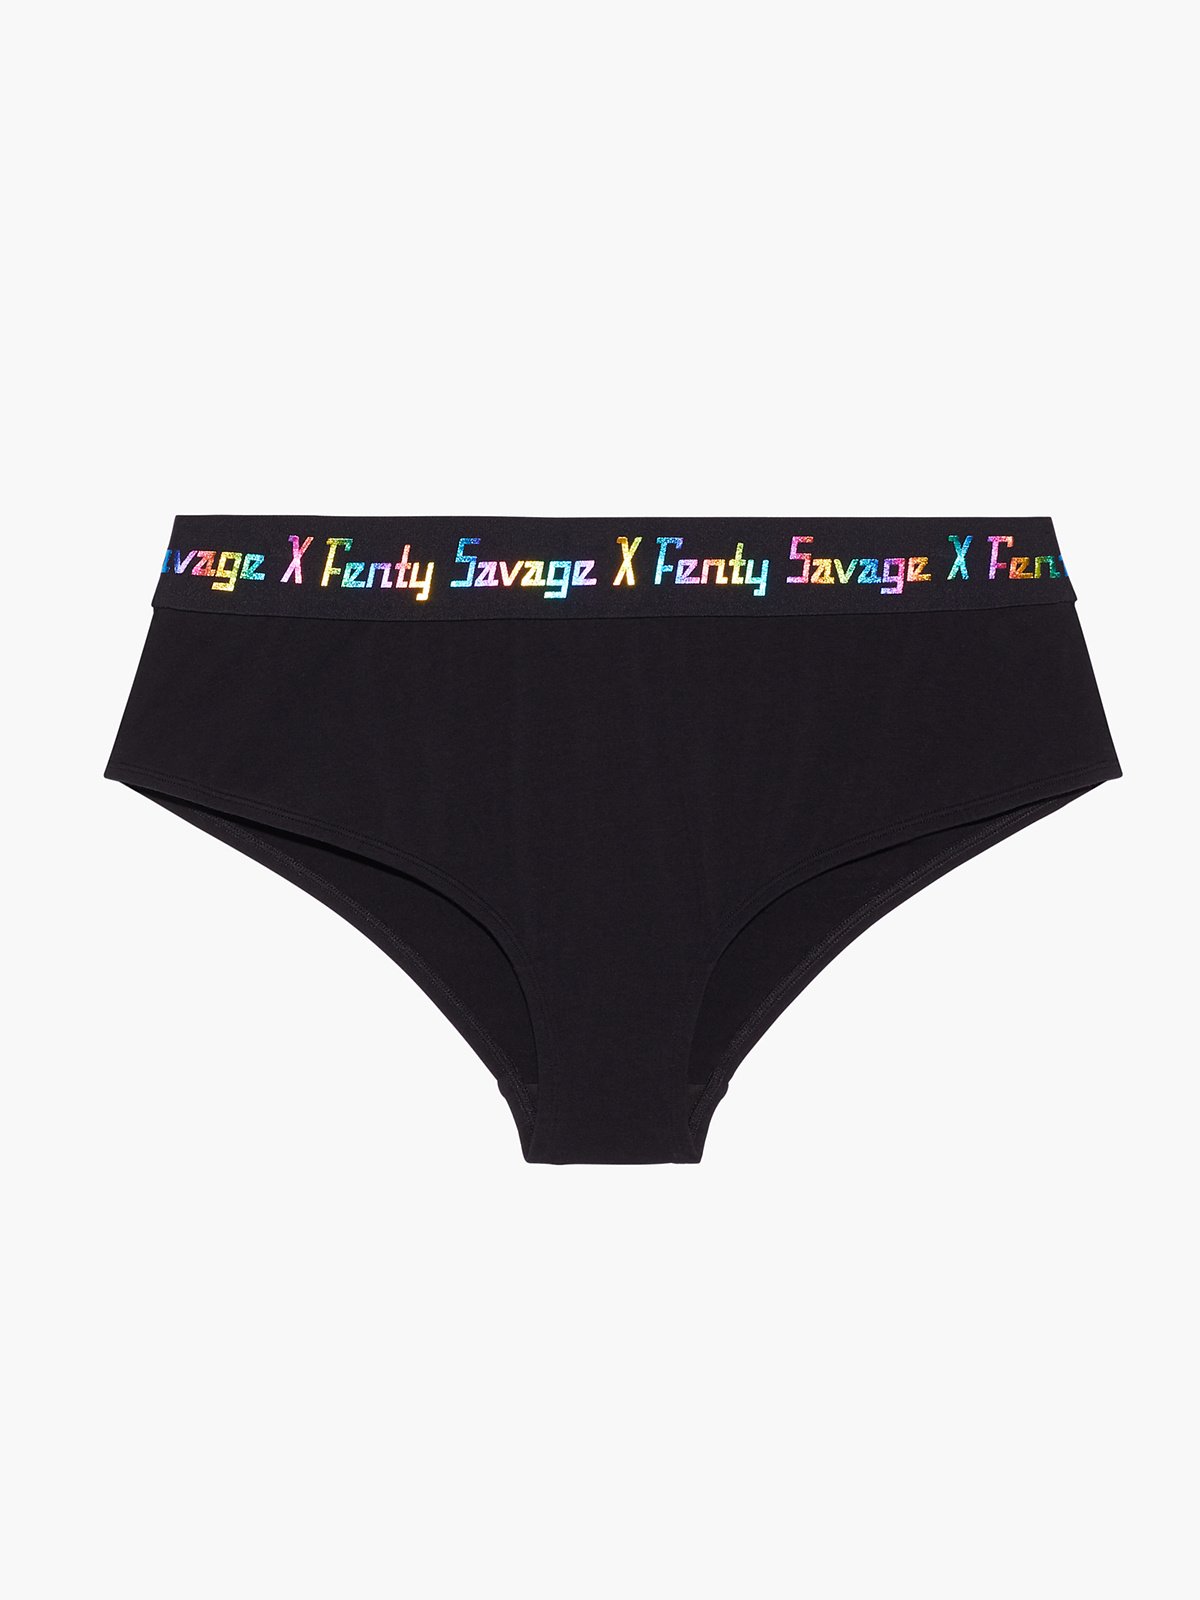 Savage x Fenty Panty Medium -New Womens Cheeky Panties Undies Lingerie  Choose!